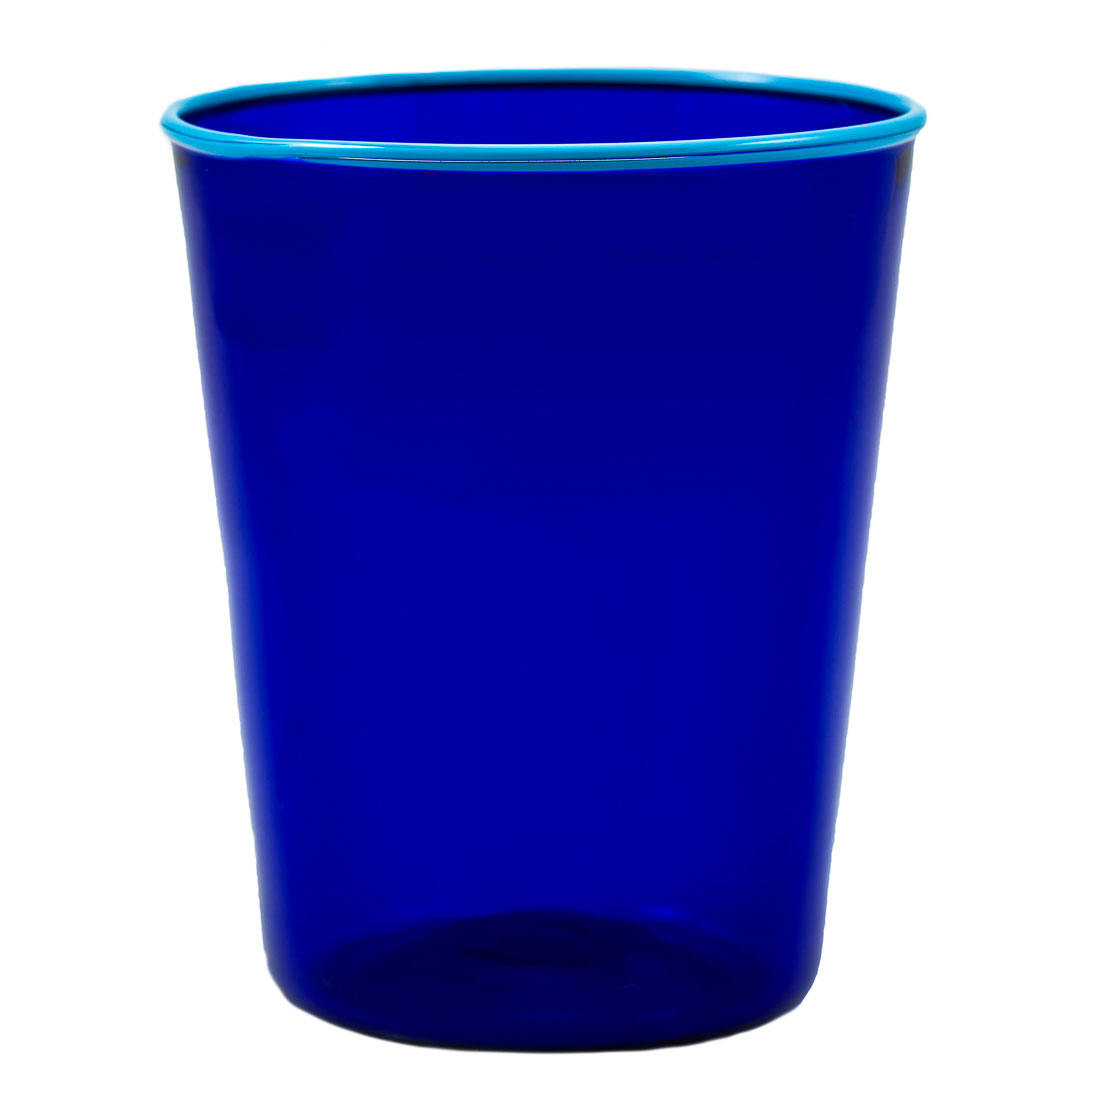 giberto-arrivabene-bicchiere-murano-blu-azzurro